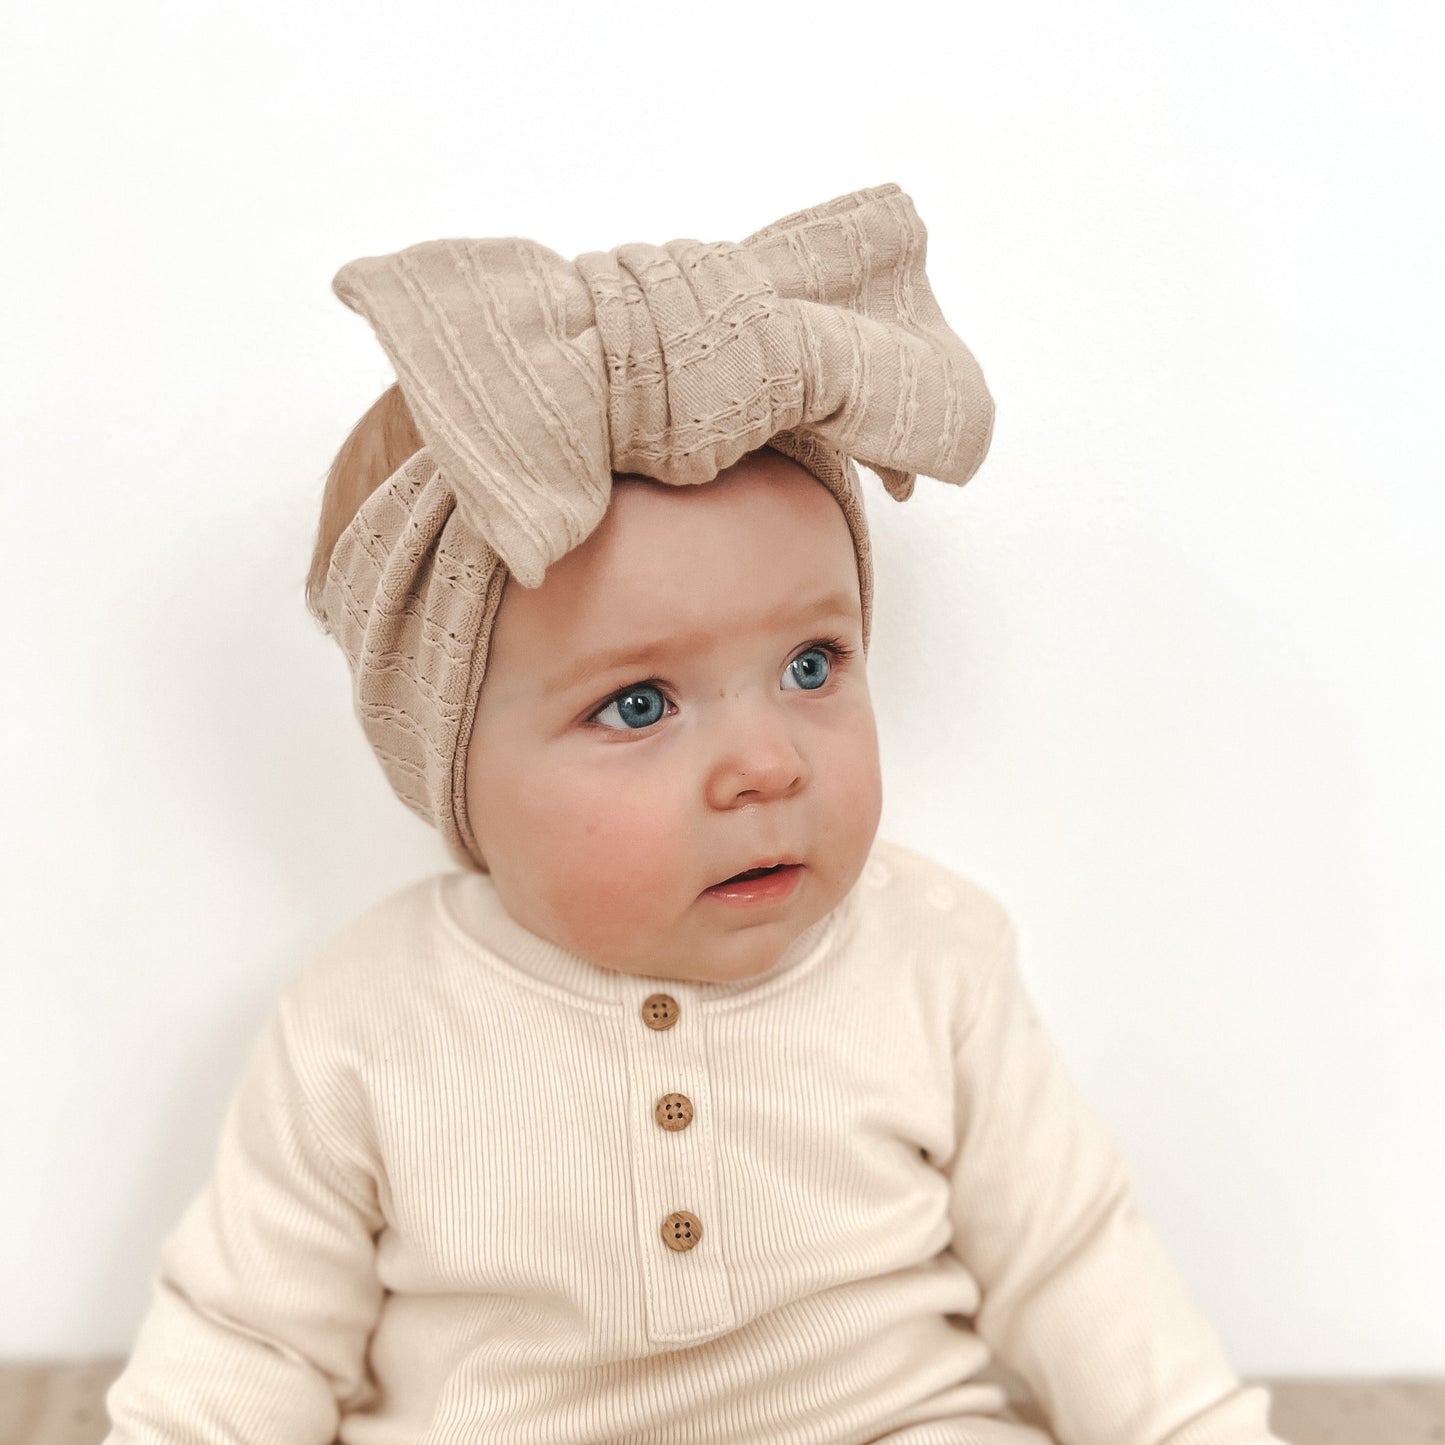 Baby headband - Mia top knot - stone